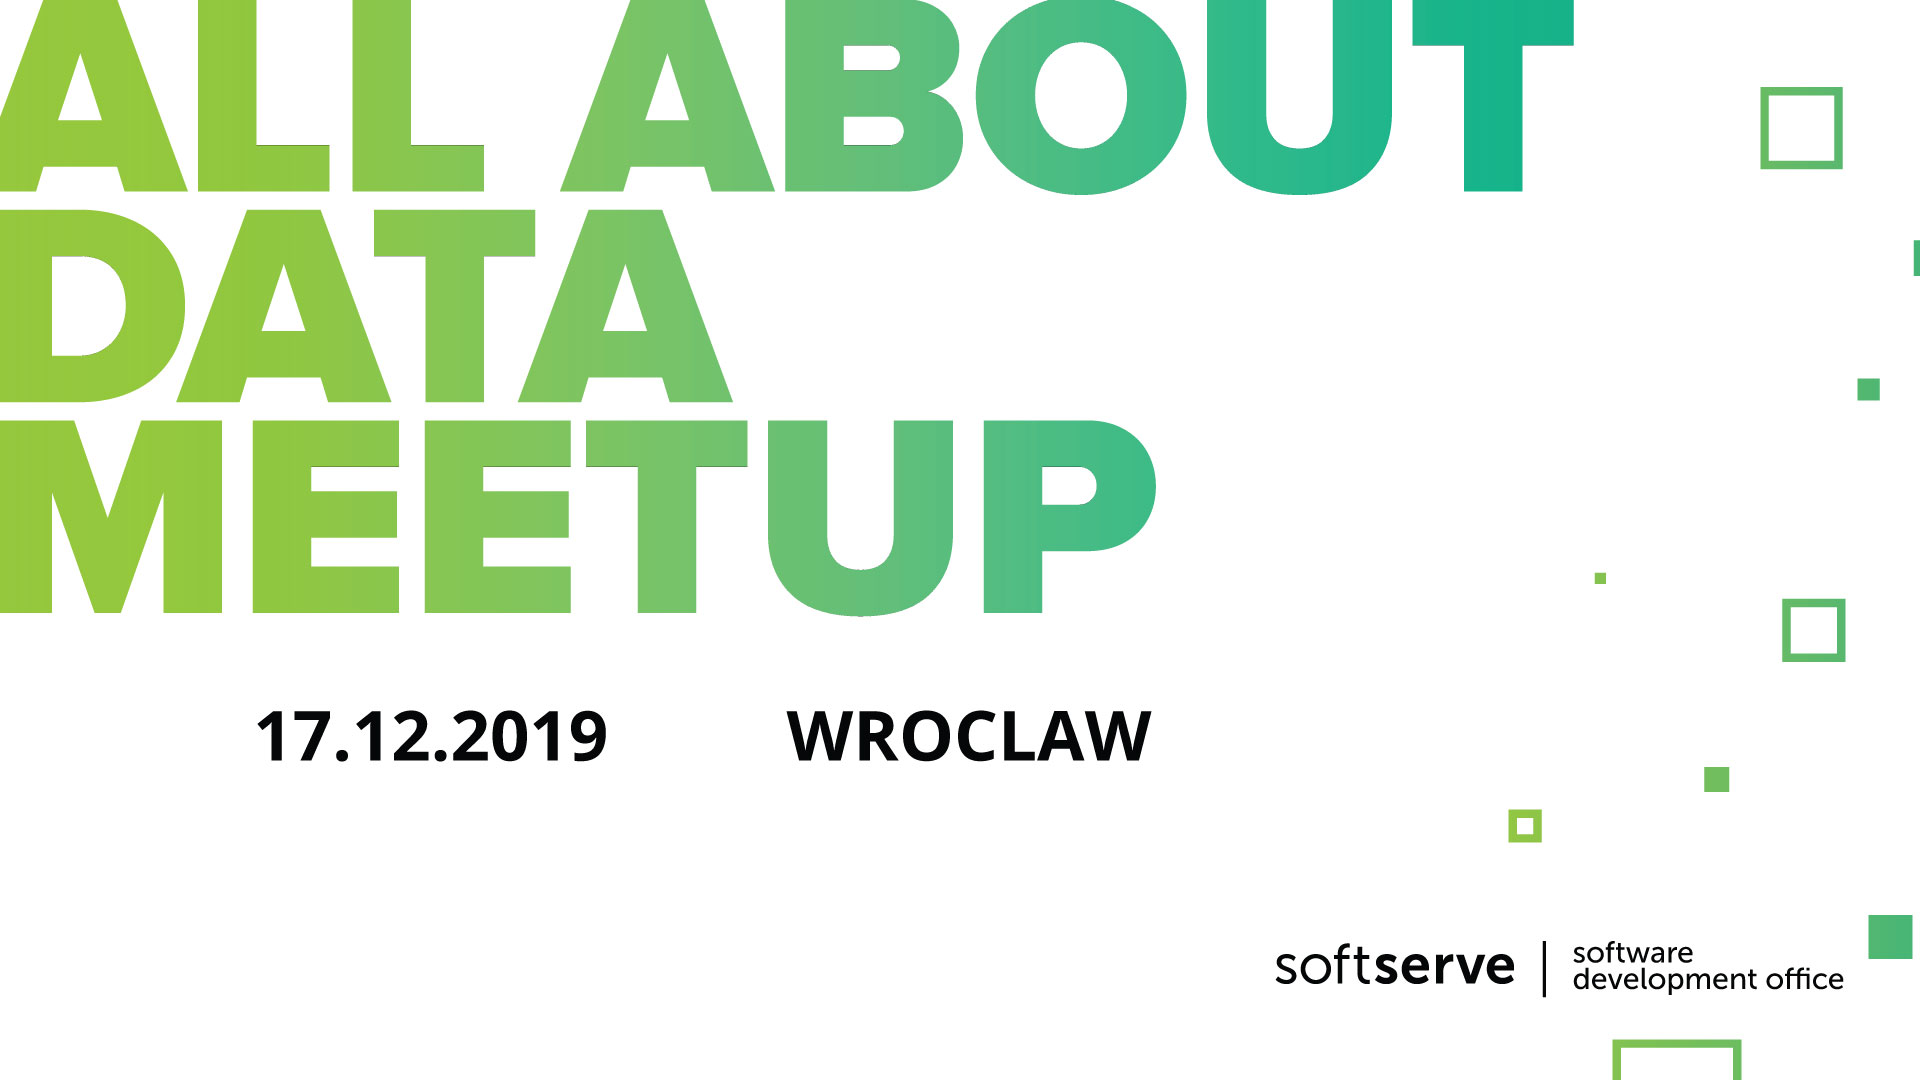 big-data-meet-up-wroclaw-grudzien-2019